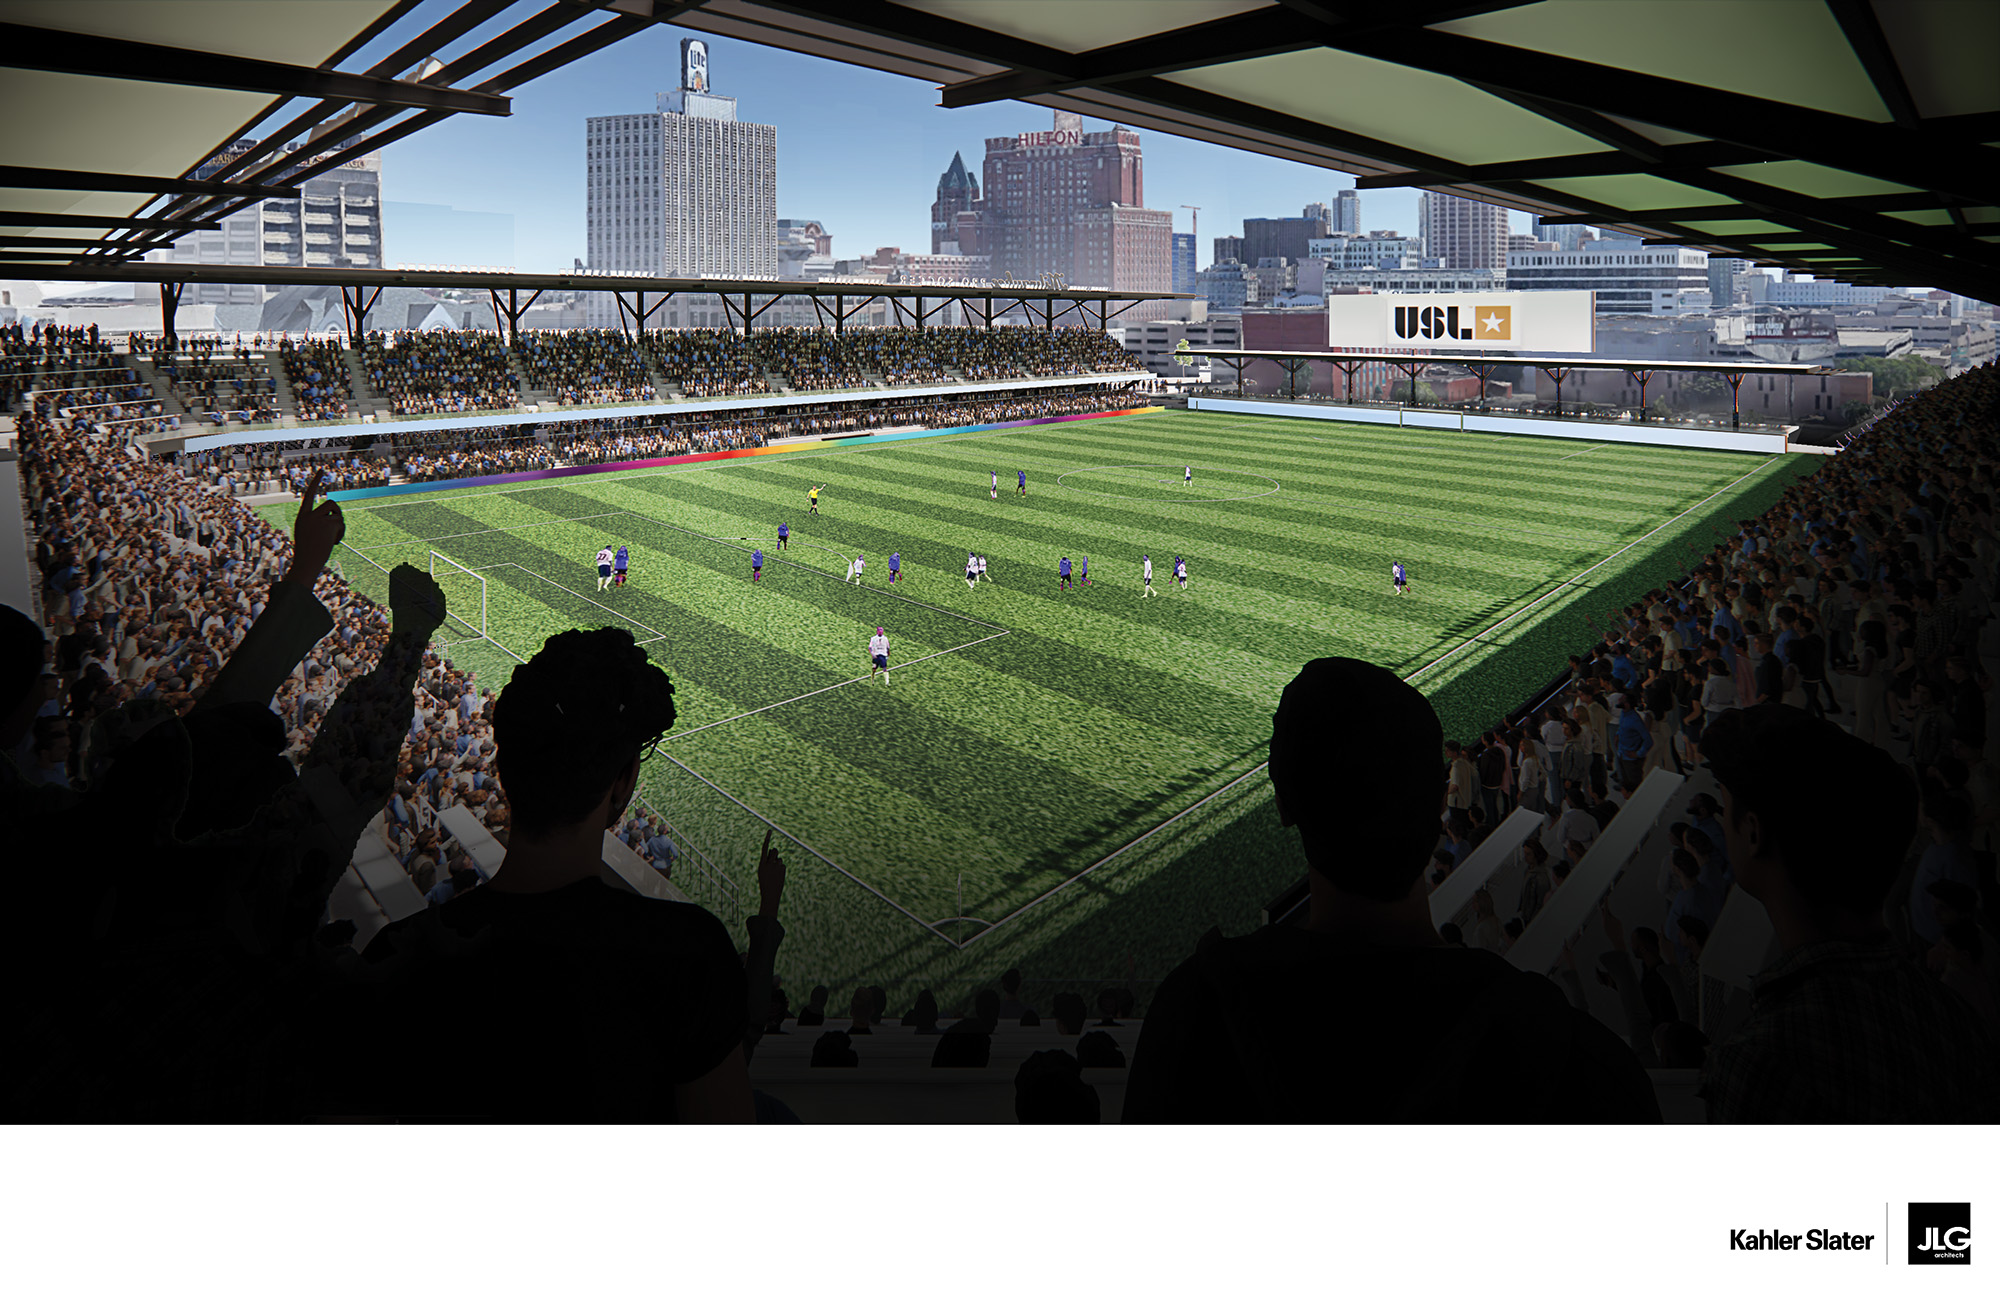 New Columbus Crew SC Stadium Plans Unveiled - Soccer Stadium Digest